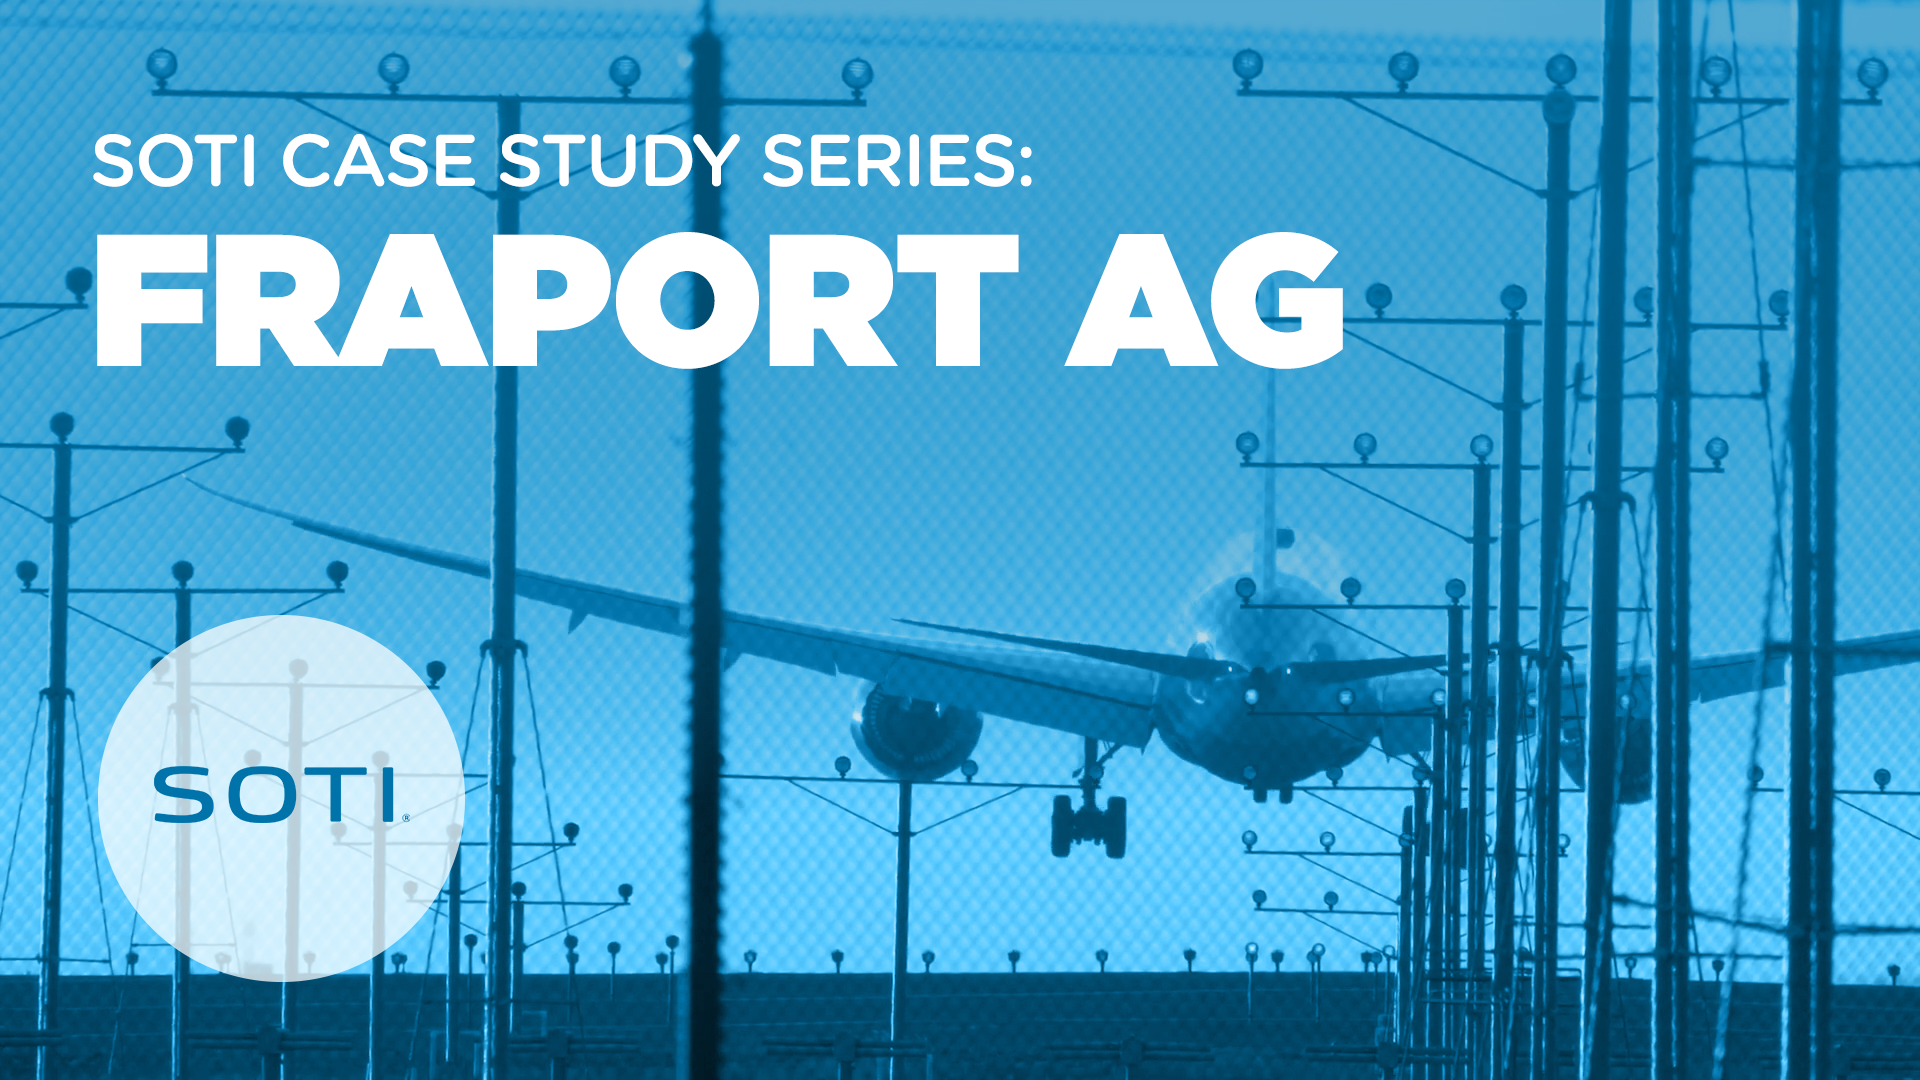 Fraport AG case study video